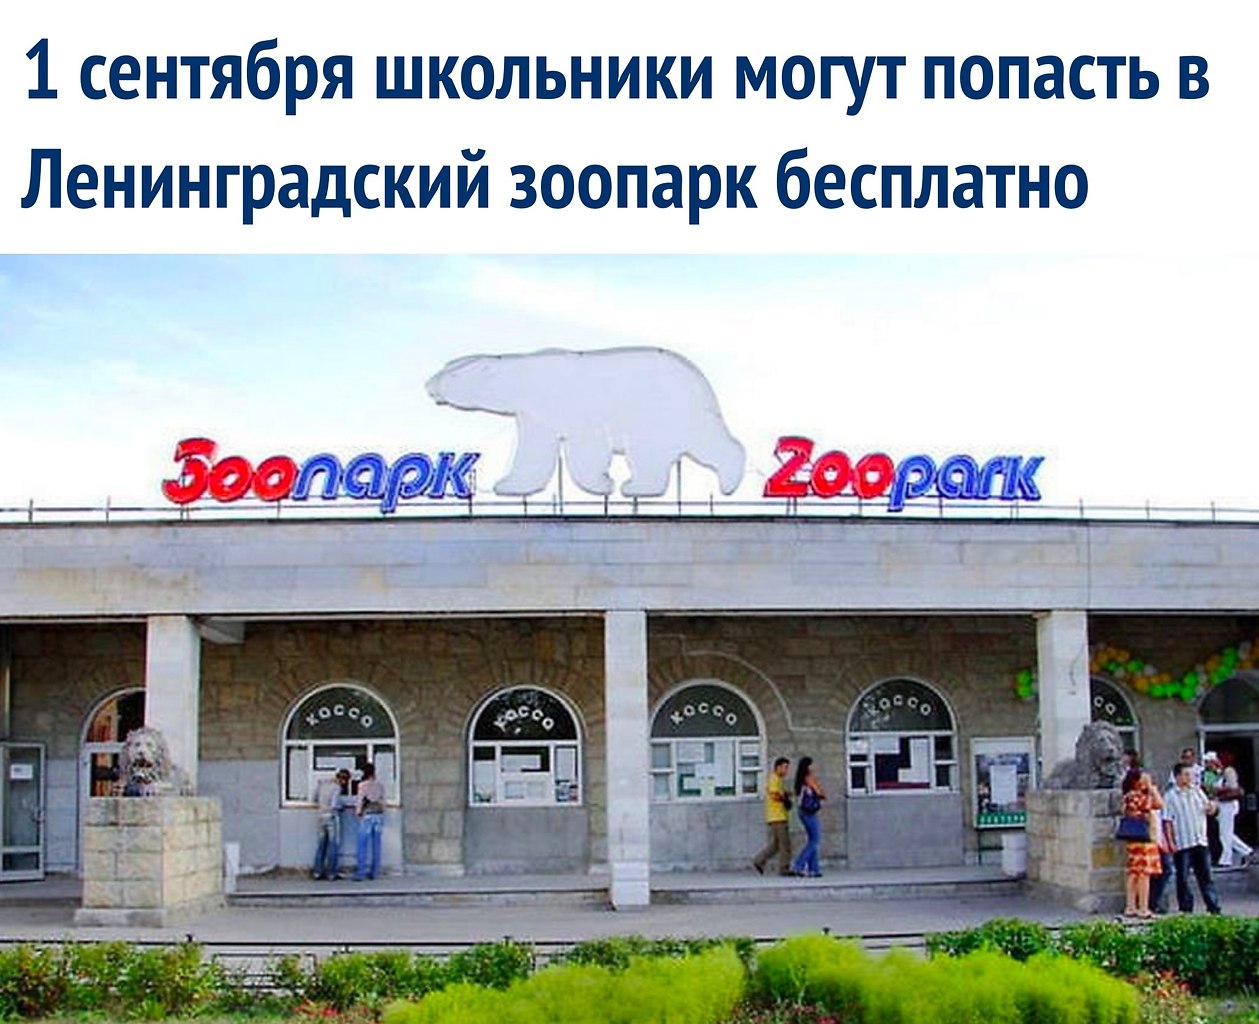 Ленинградский зоопарк лого